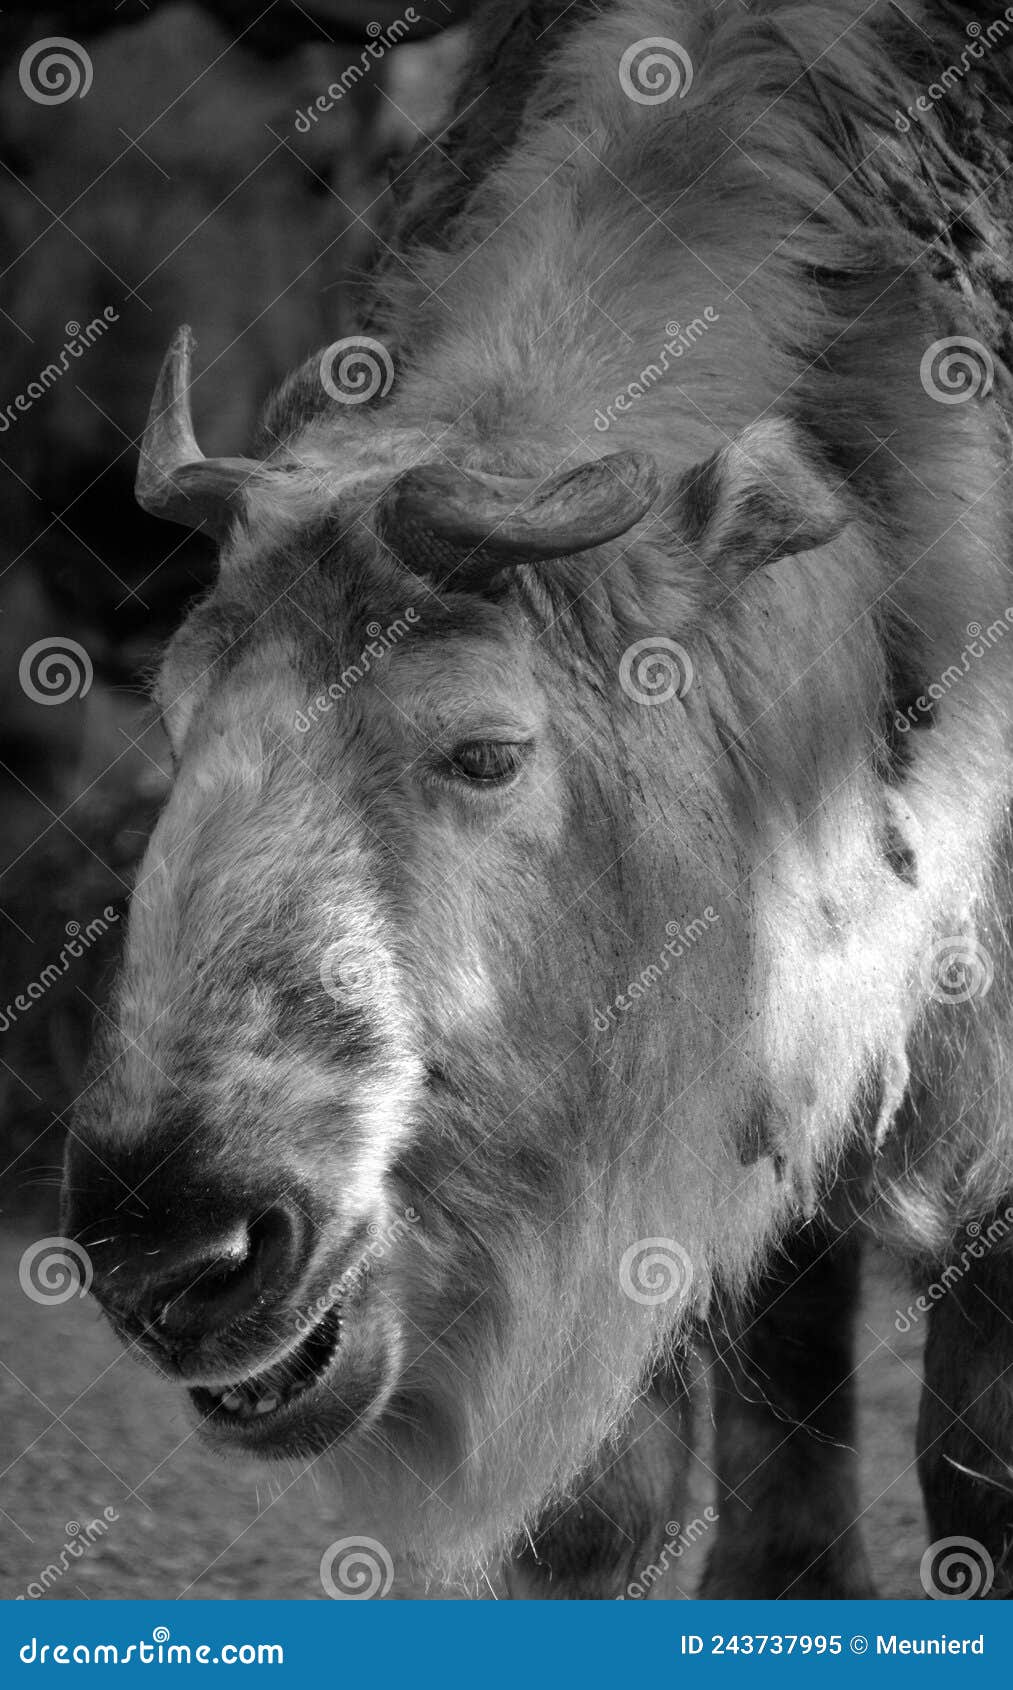 sichuan takin or tibetan takin is a subspecies of takin goat-antelope.